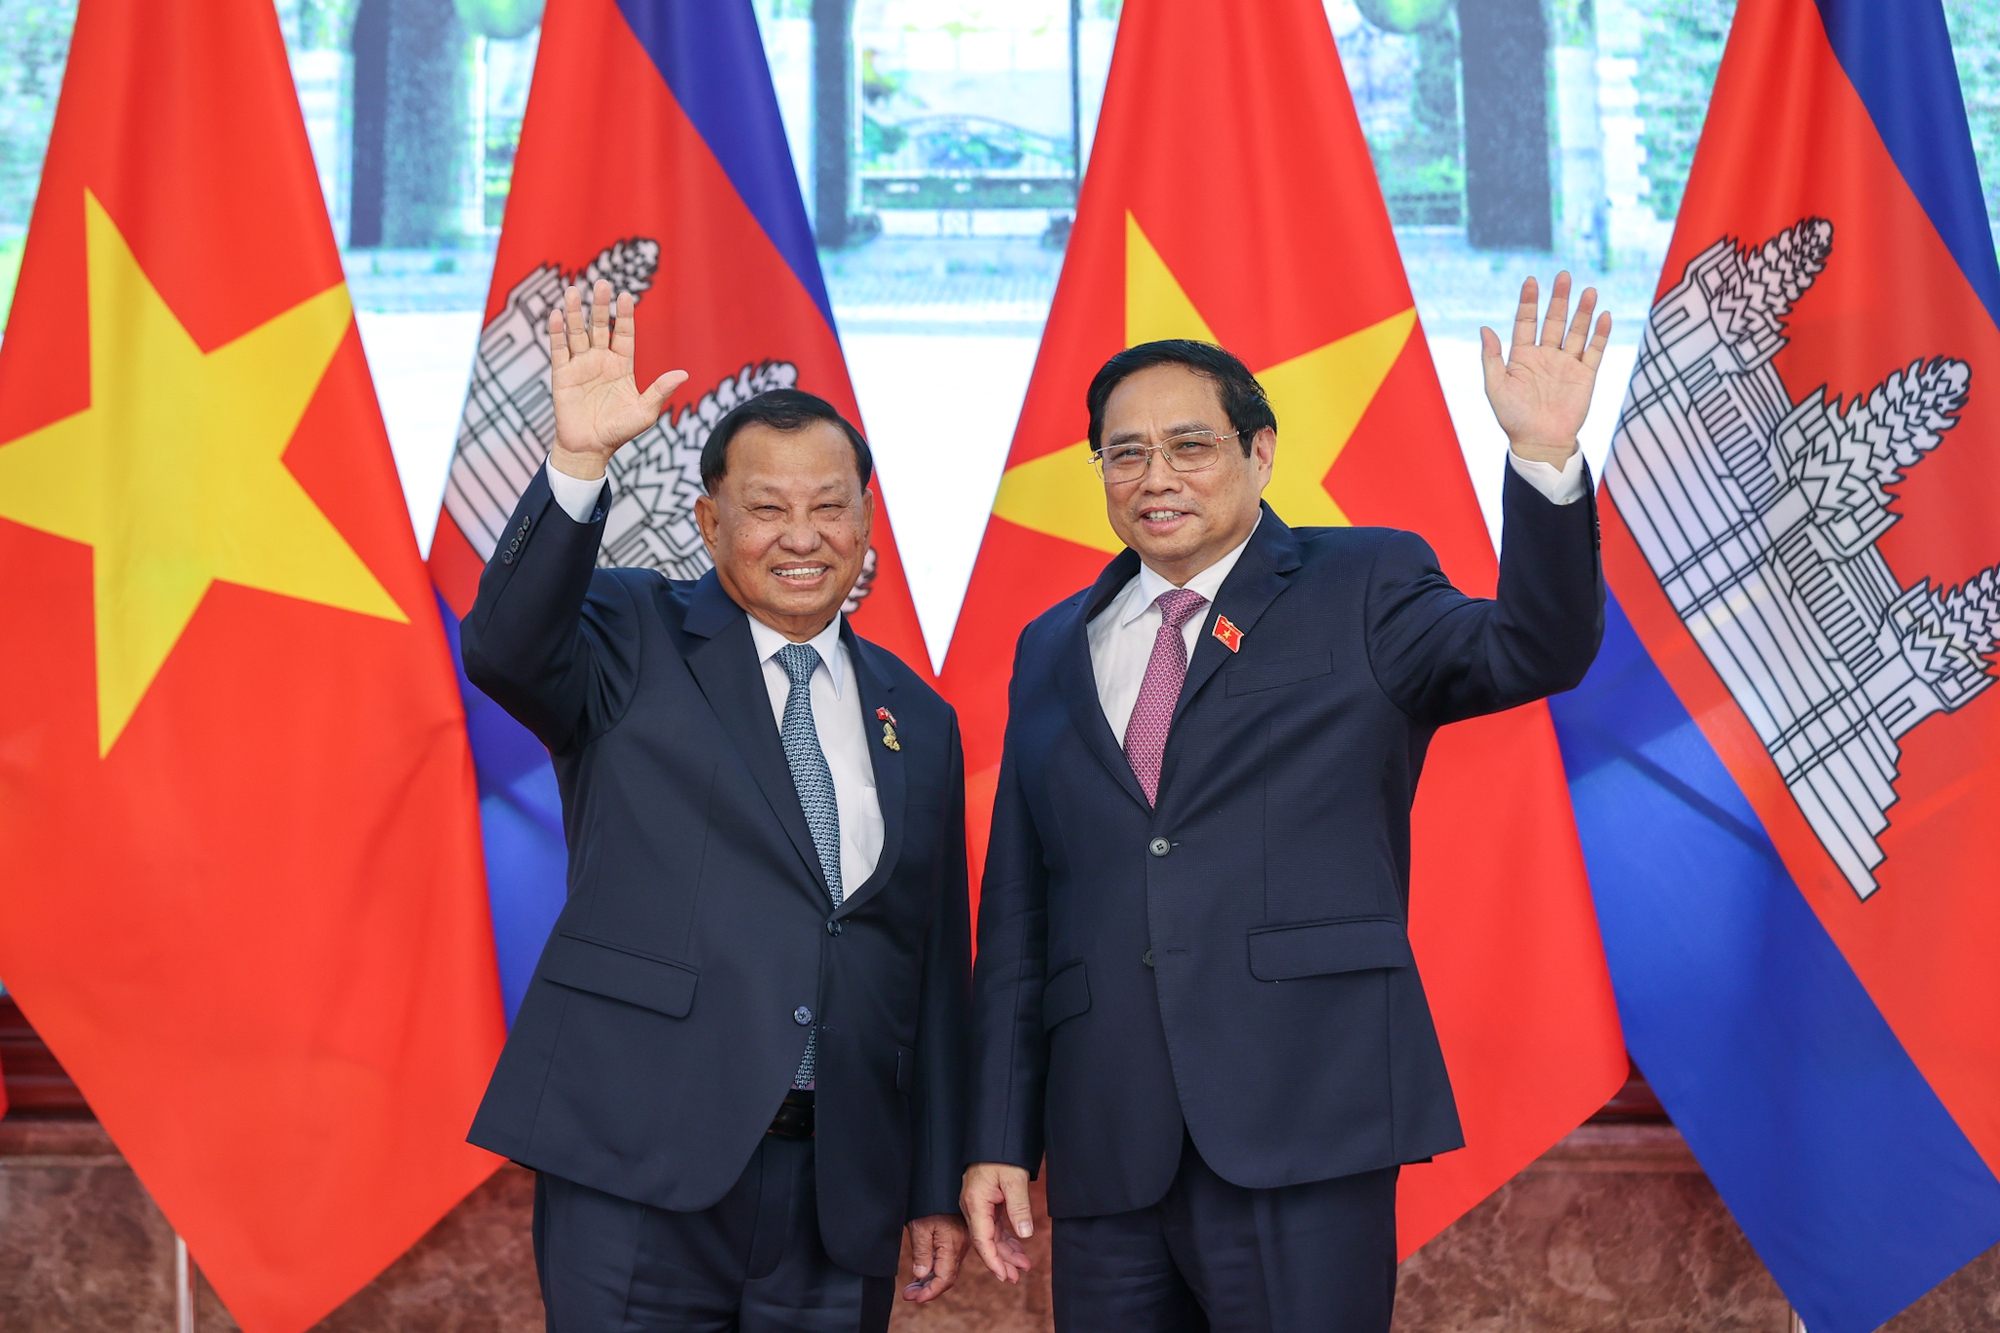 Thượng viện Campuchia là nơi diễn ra những quyết định quan trọng cho đất nước và dân tộc Campuchia. Với mối quan hệ tốt đẹp với Việt Nam, nơi đây cũng đang trở thành điểm đến thu hút đông đảo các nhà quản lý, chính trị gia, giáo dục gia của Việt Nam đến tham quan và học tập kinh nghiệm.